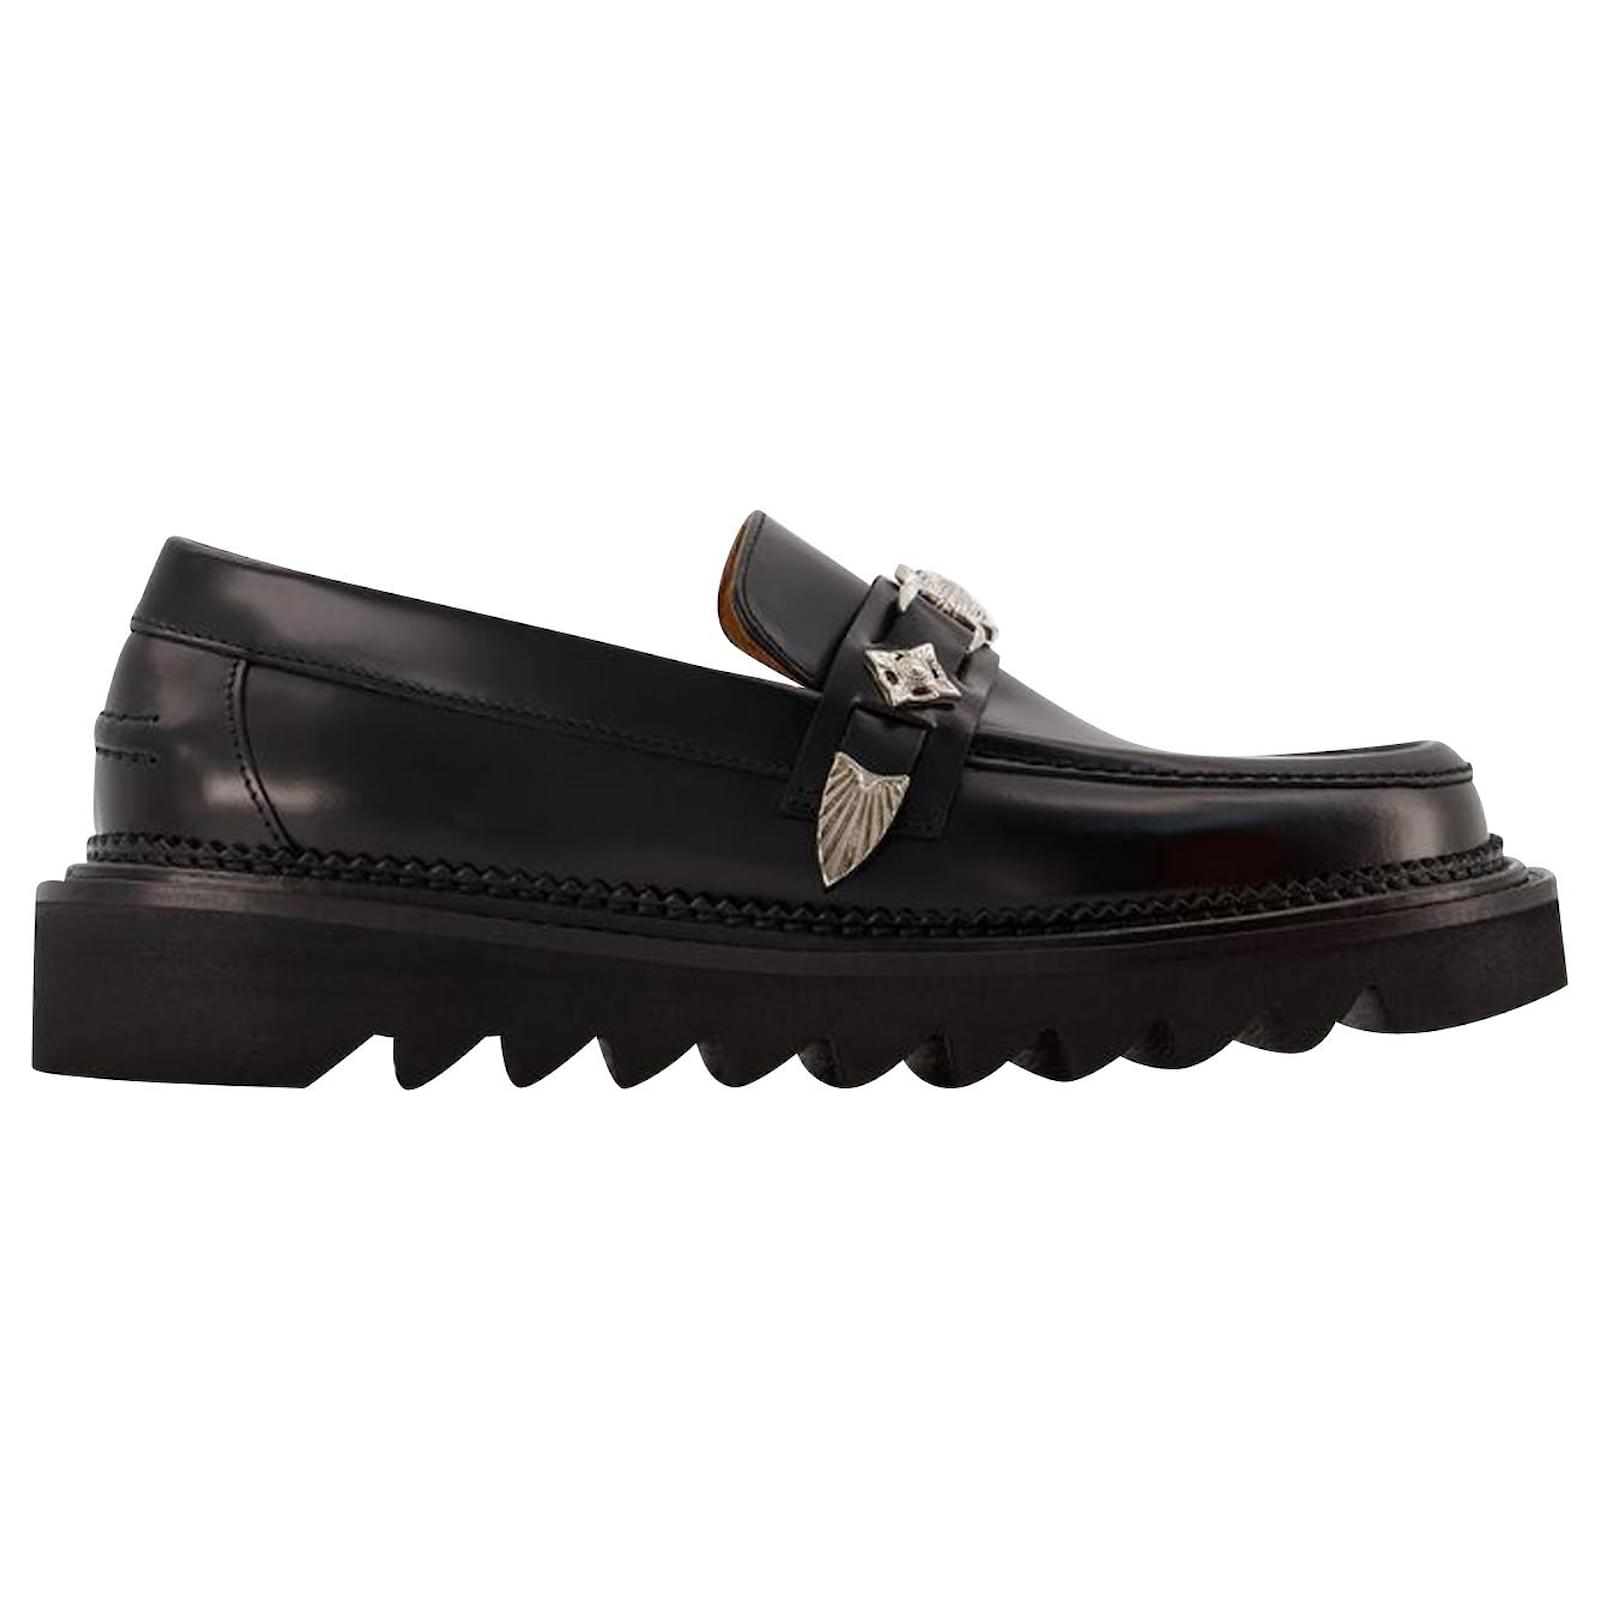 Toga Pulla AJ1253 Flat Shoes - Toga Virilis - Black - Polido Leather ...